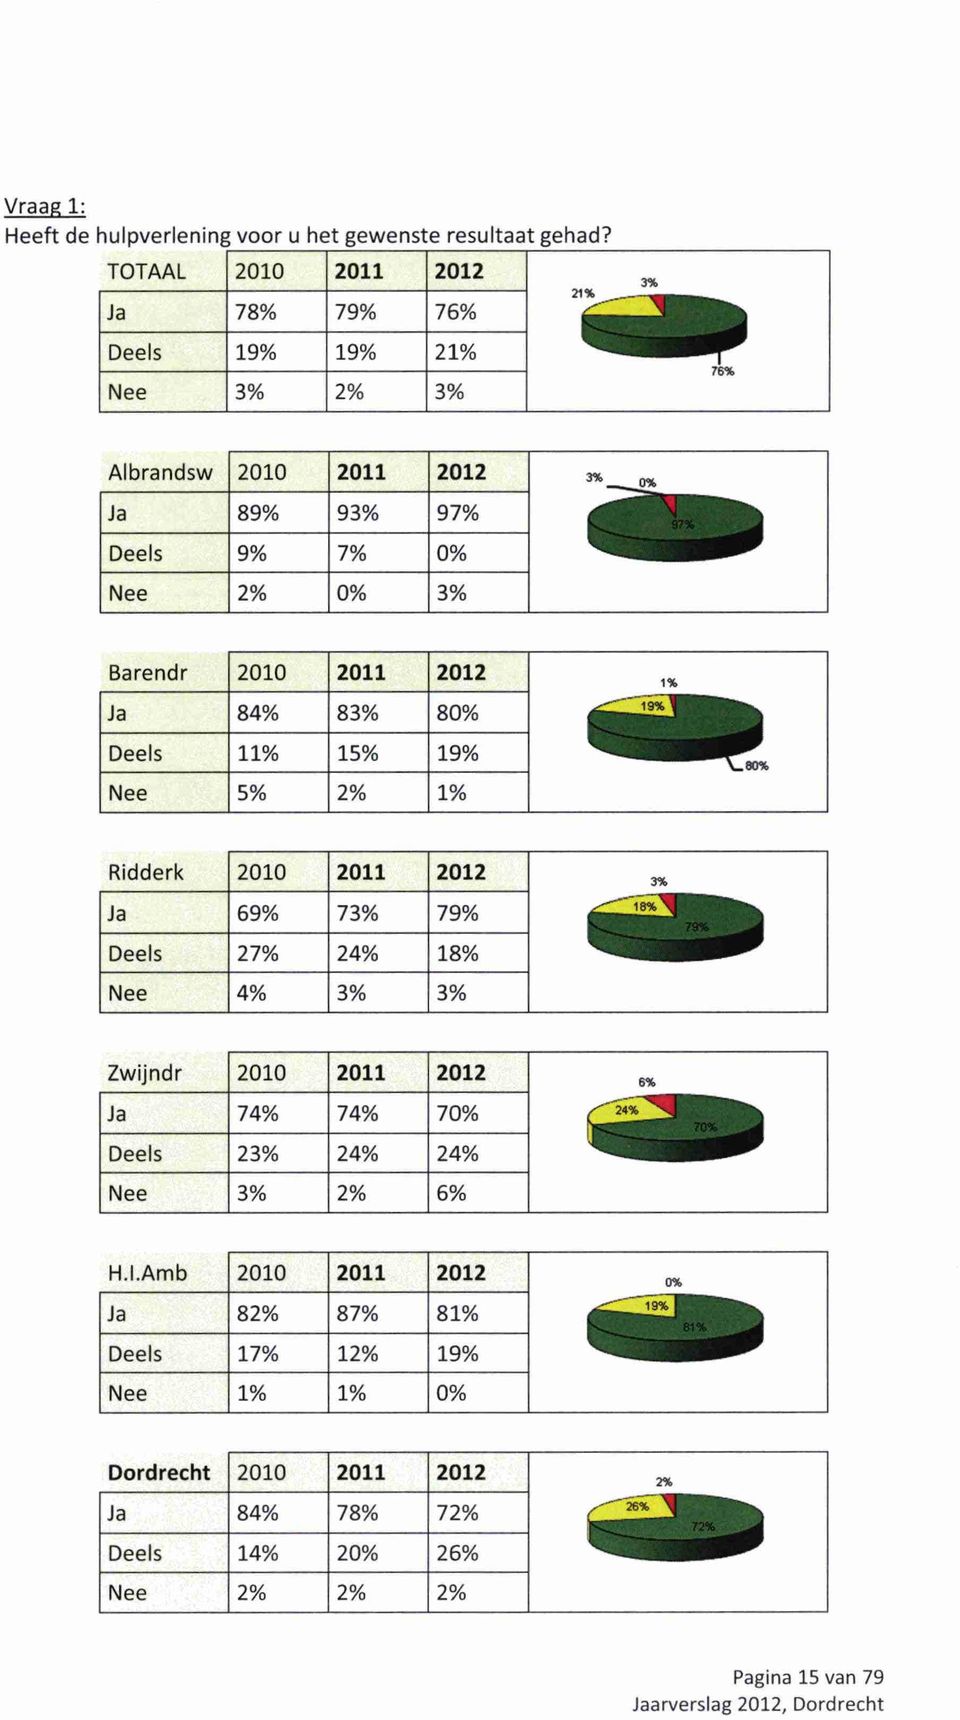 Barendr 2010 2011 2012 Ja 84% 83% 80% Deels 11% 15% 19% Nee 5% 2% 1% 1% ---1-9% eo% Ridderk 2010 2011 2012 Ja 69% 73% 79% Deels 27% 24% 18% Nee 4% 3% 3% k i i i»